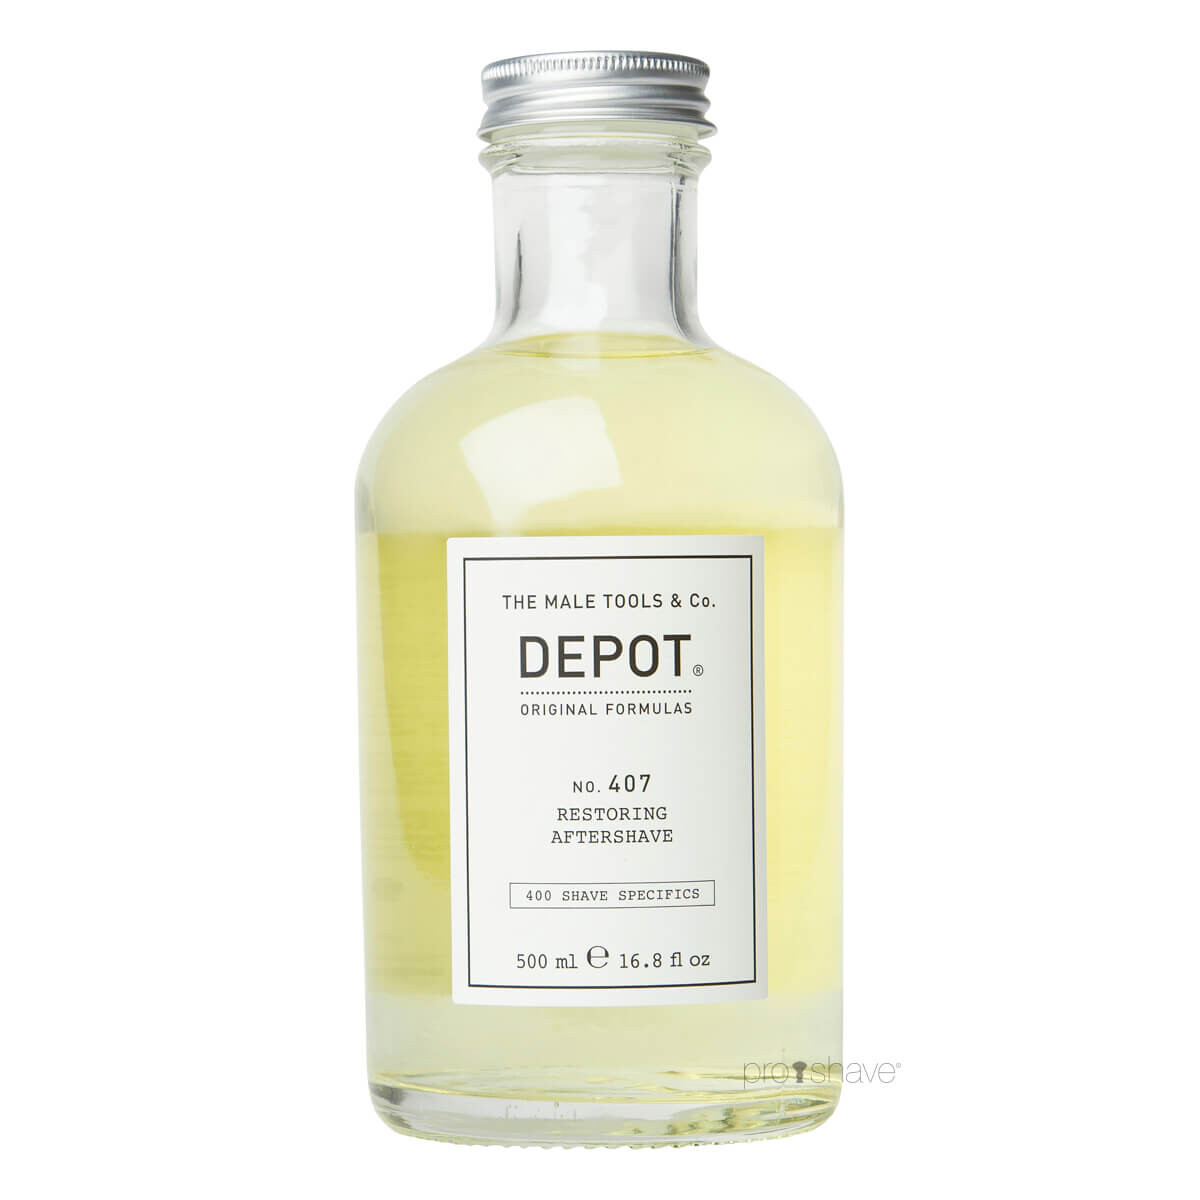 Depot Restoring Aftershave, No. 407, 500 ml.